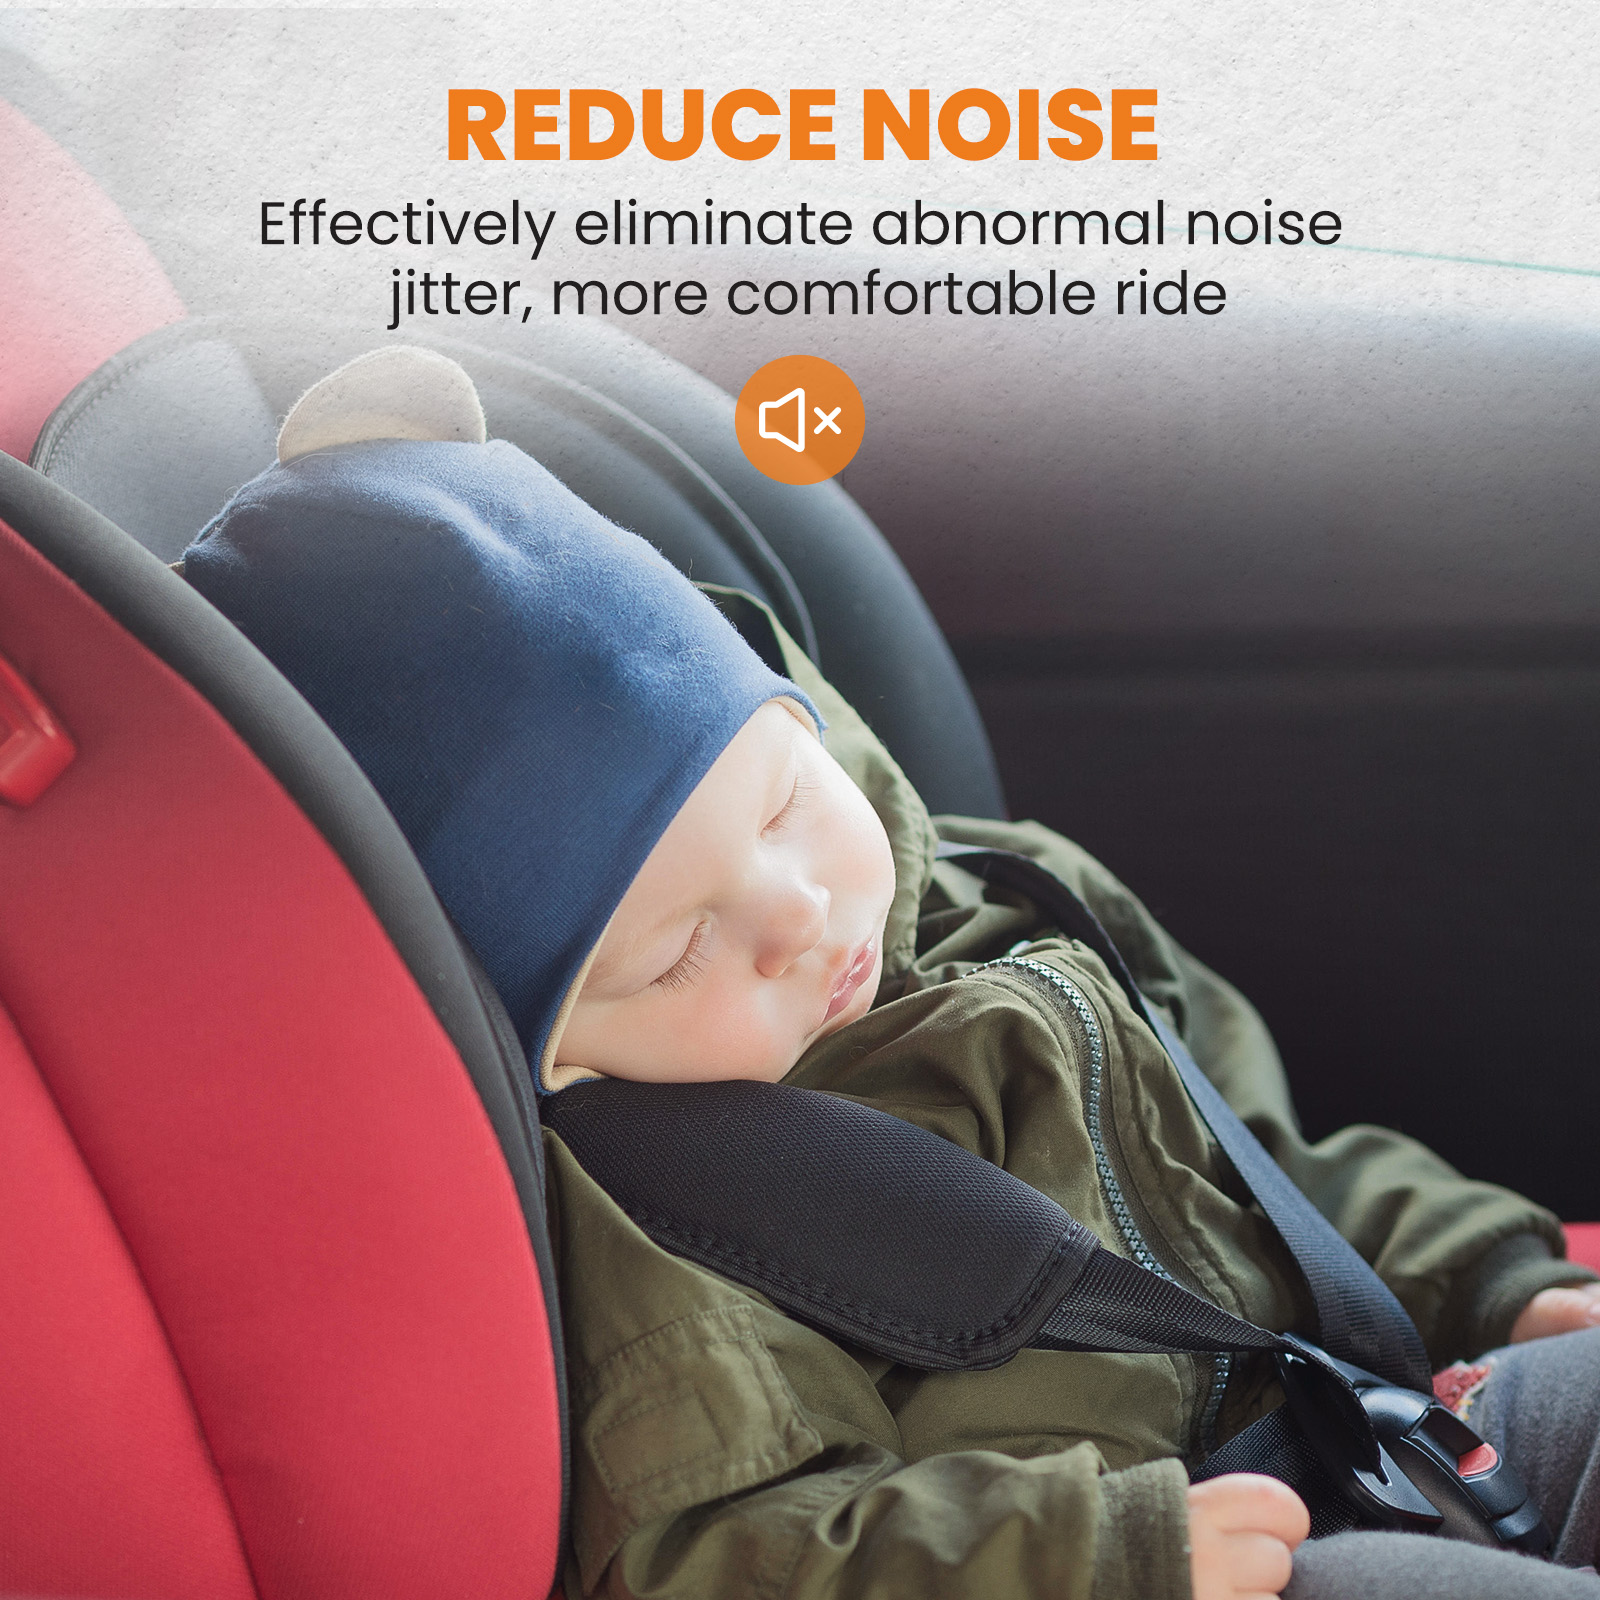 Reduce Noise